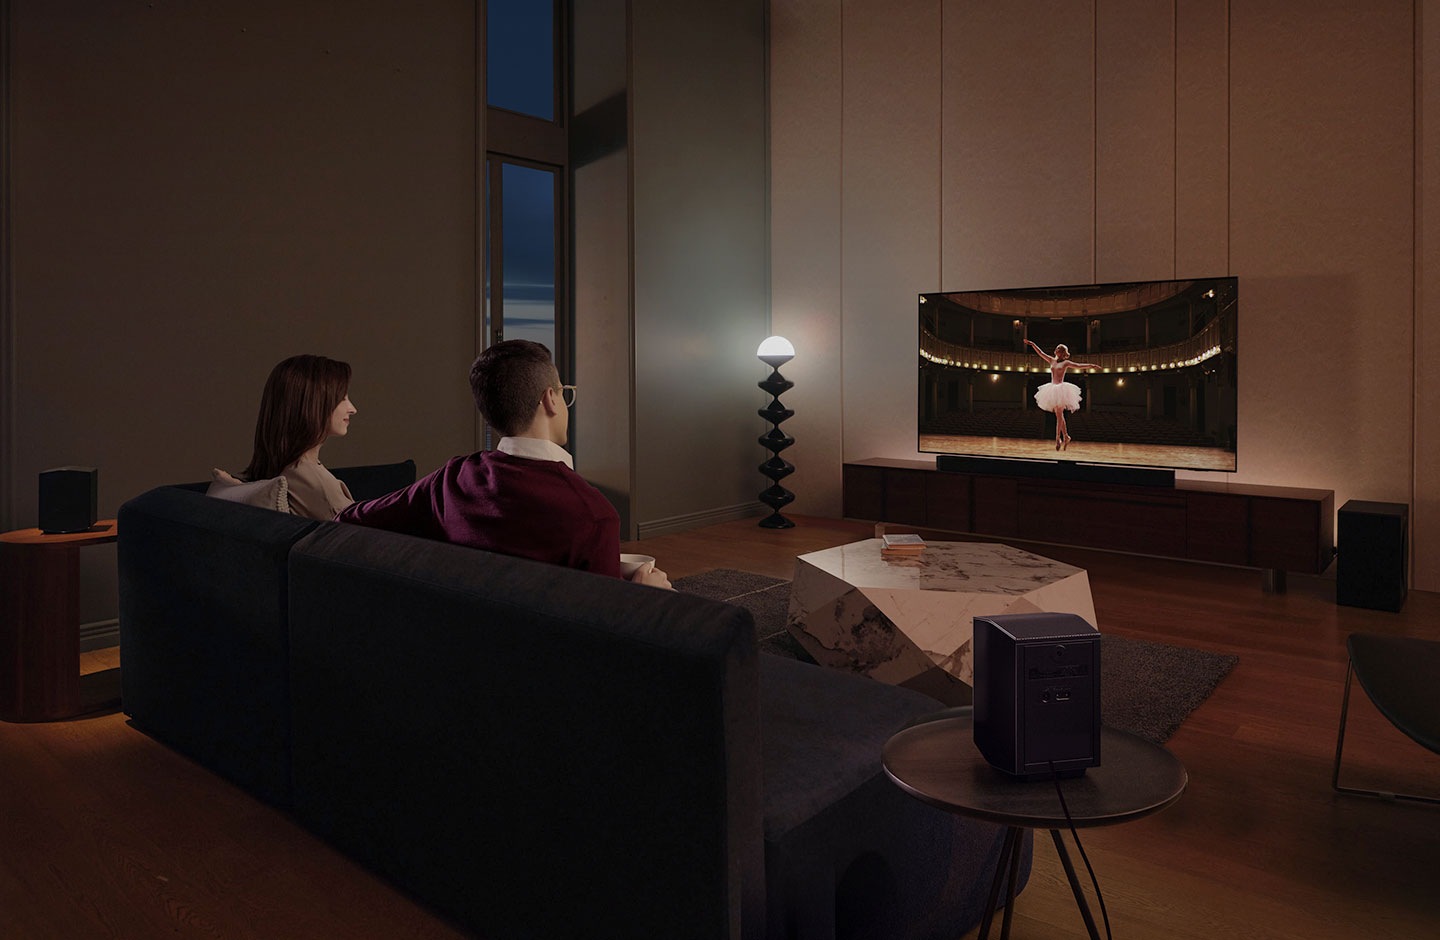 Un couple profite d’une soirée comme au cinéma dans son salon grâce au son ambiophonique de la barre de son Samsung.